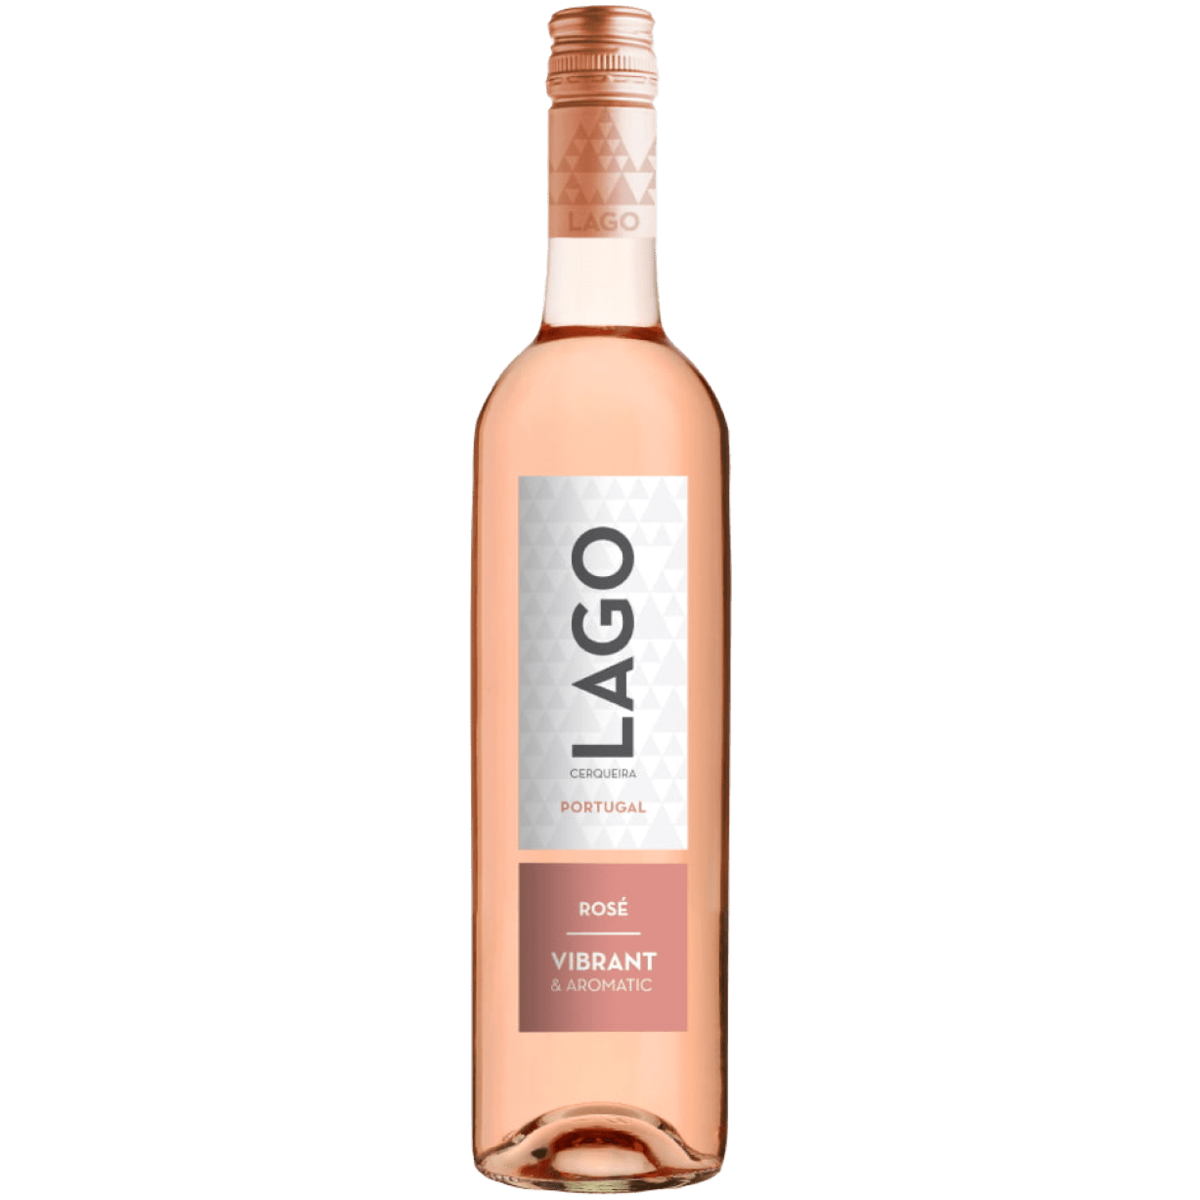 Vina gormaz. Вино Винью Лаго Розе. Lago Vinho Verde Rose. Вино Верде Лаго розовое. Вино Lago Vinho Verde.